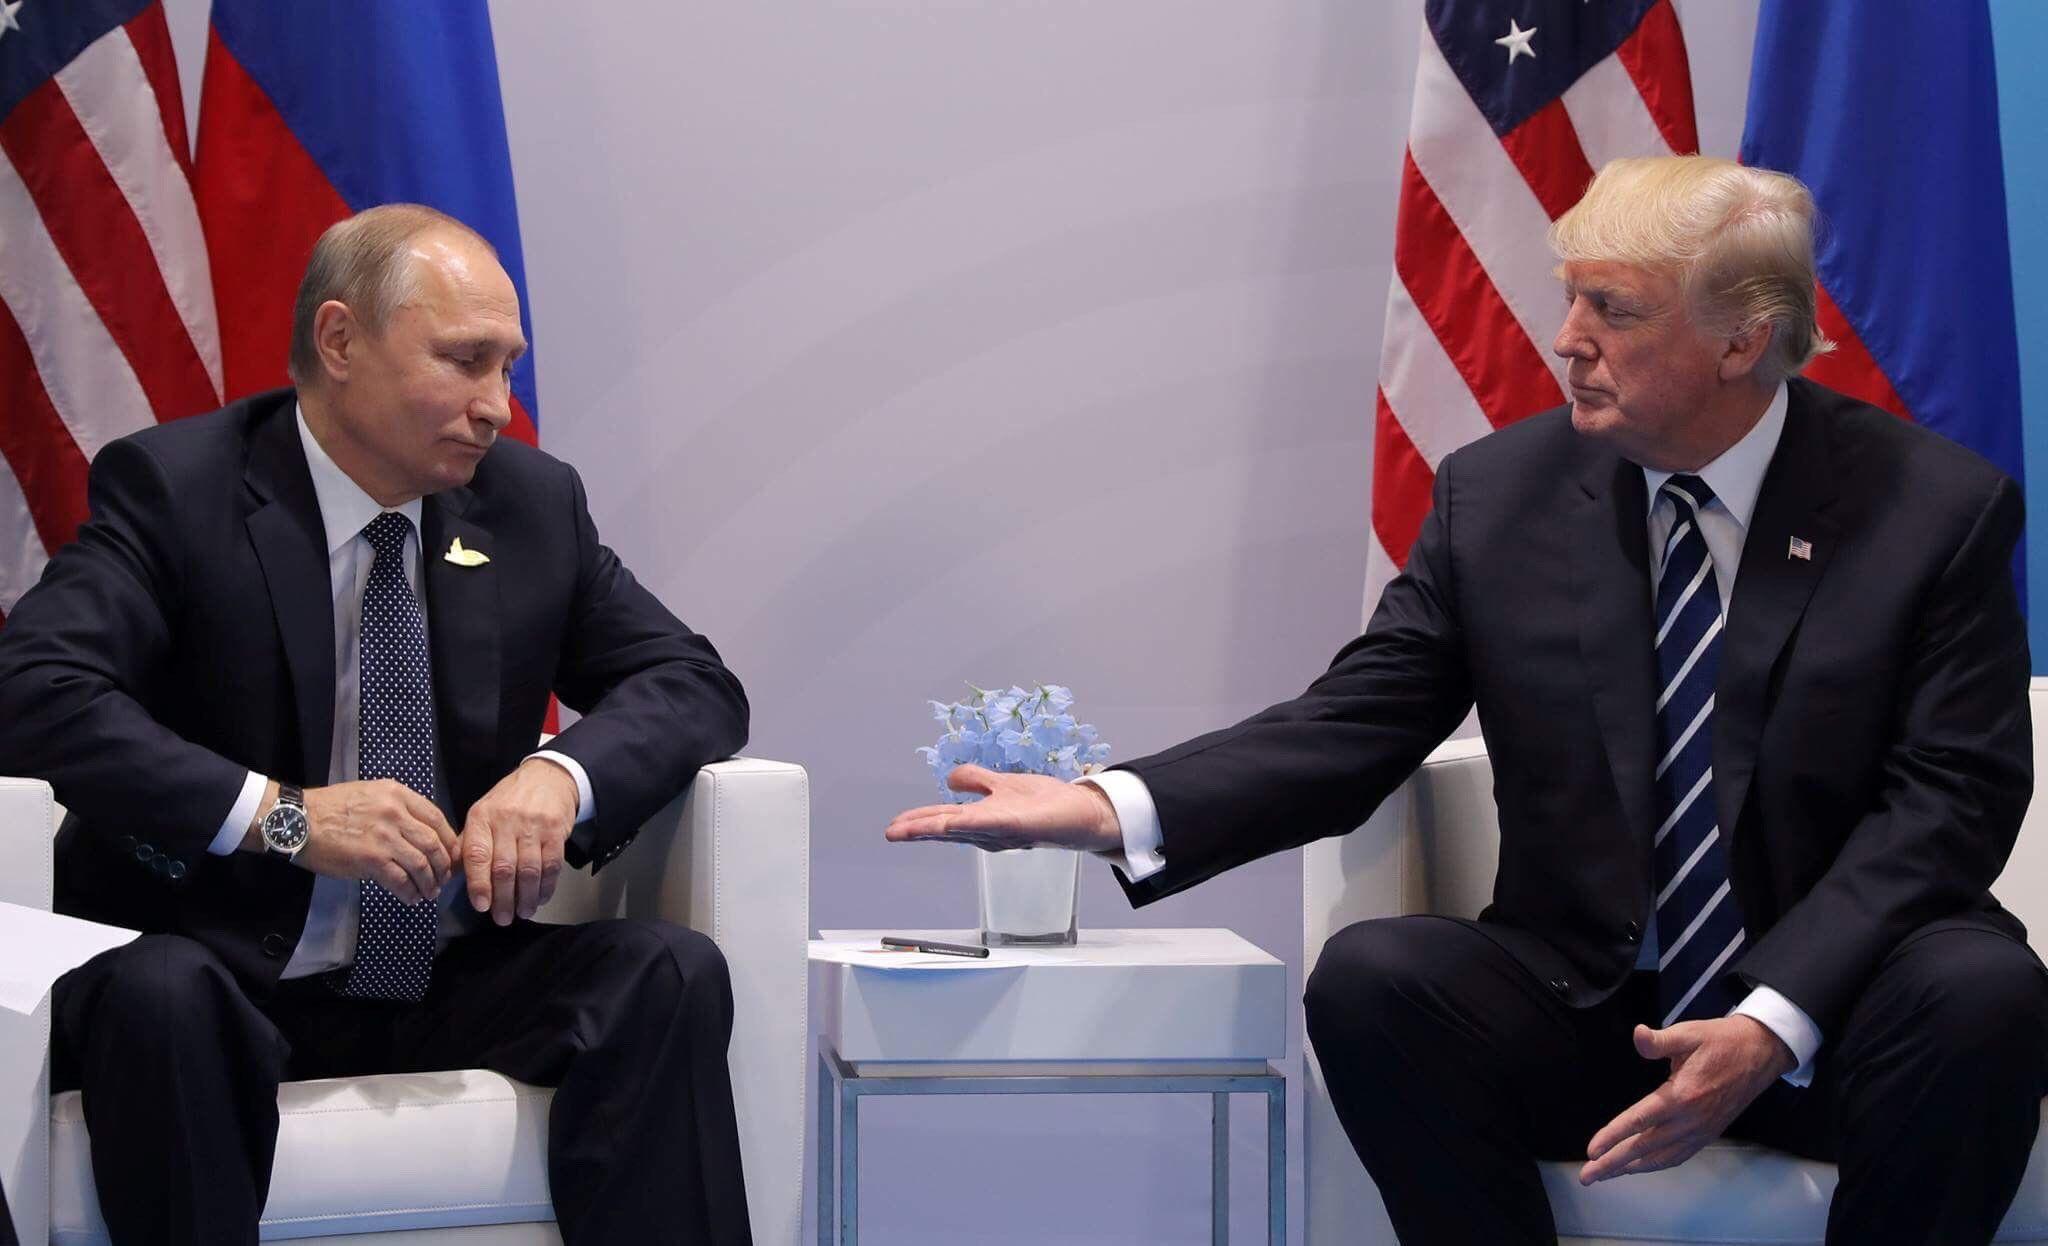 Стала известна дата встречи Путина и Трампа